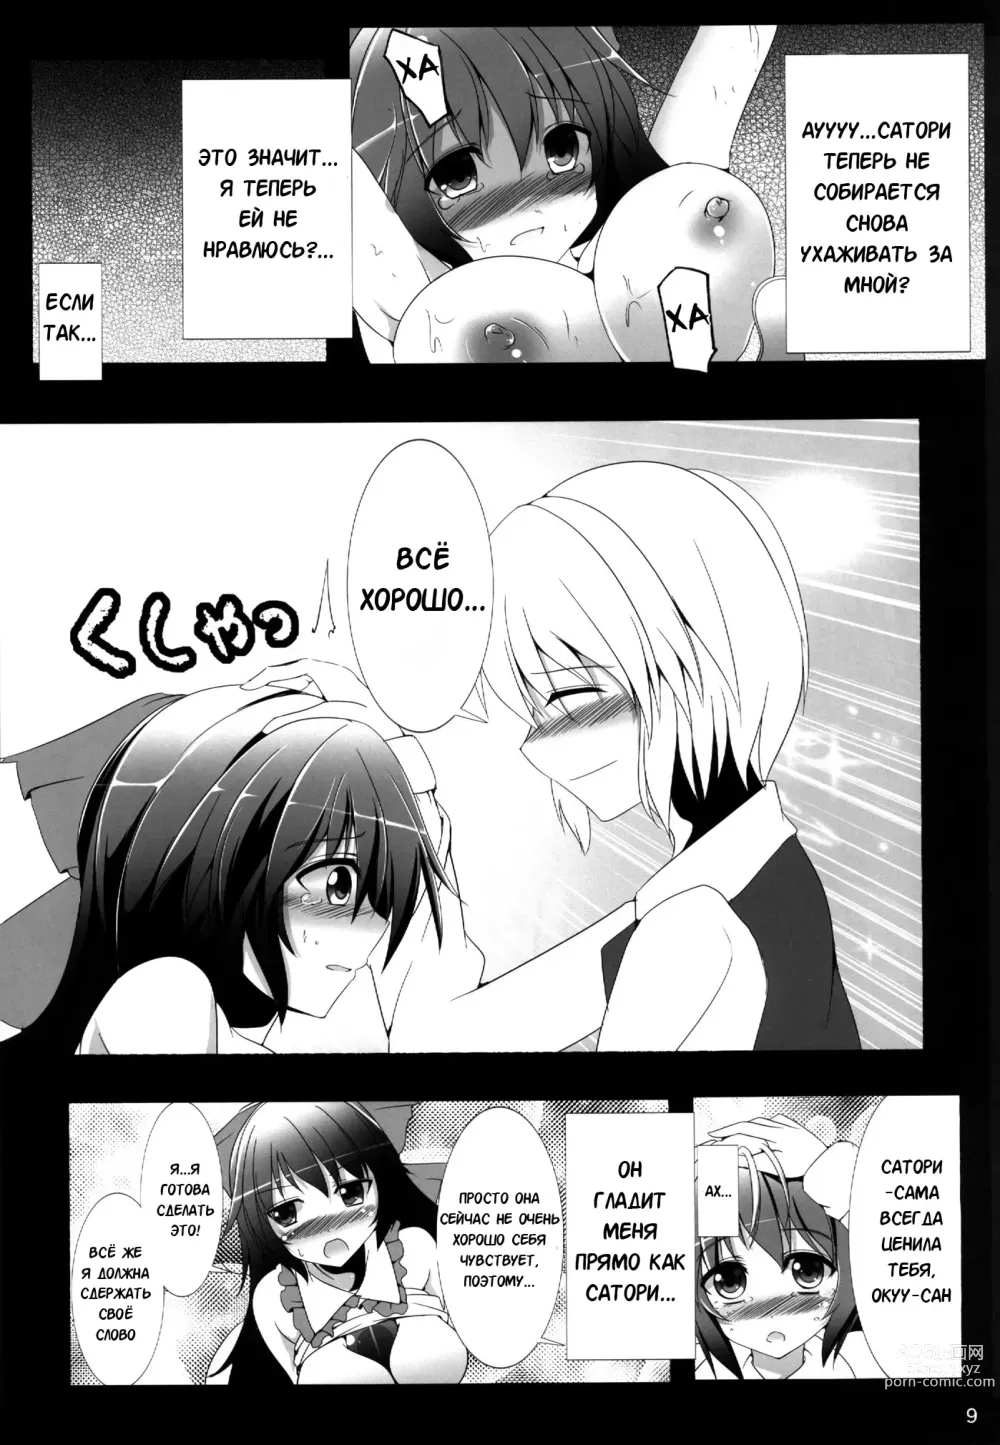 Page 10 of doujinshi Всё, что я делал с Окуу-тян!